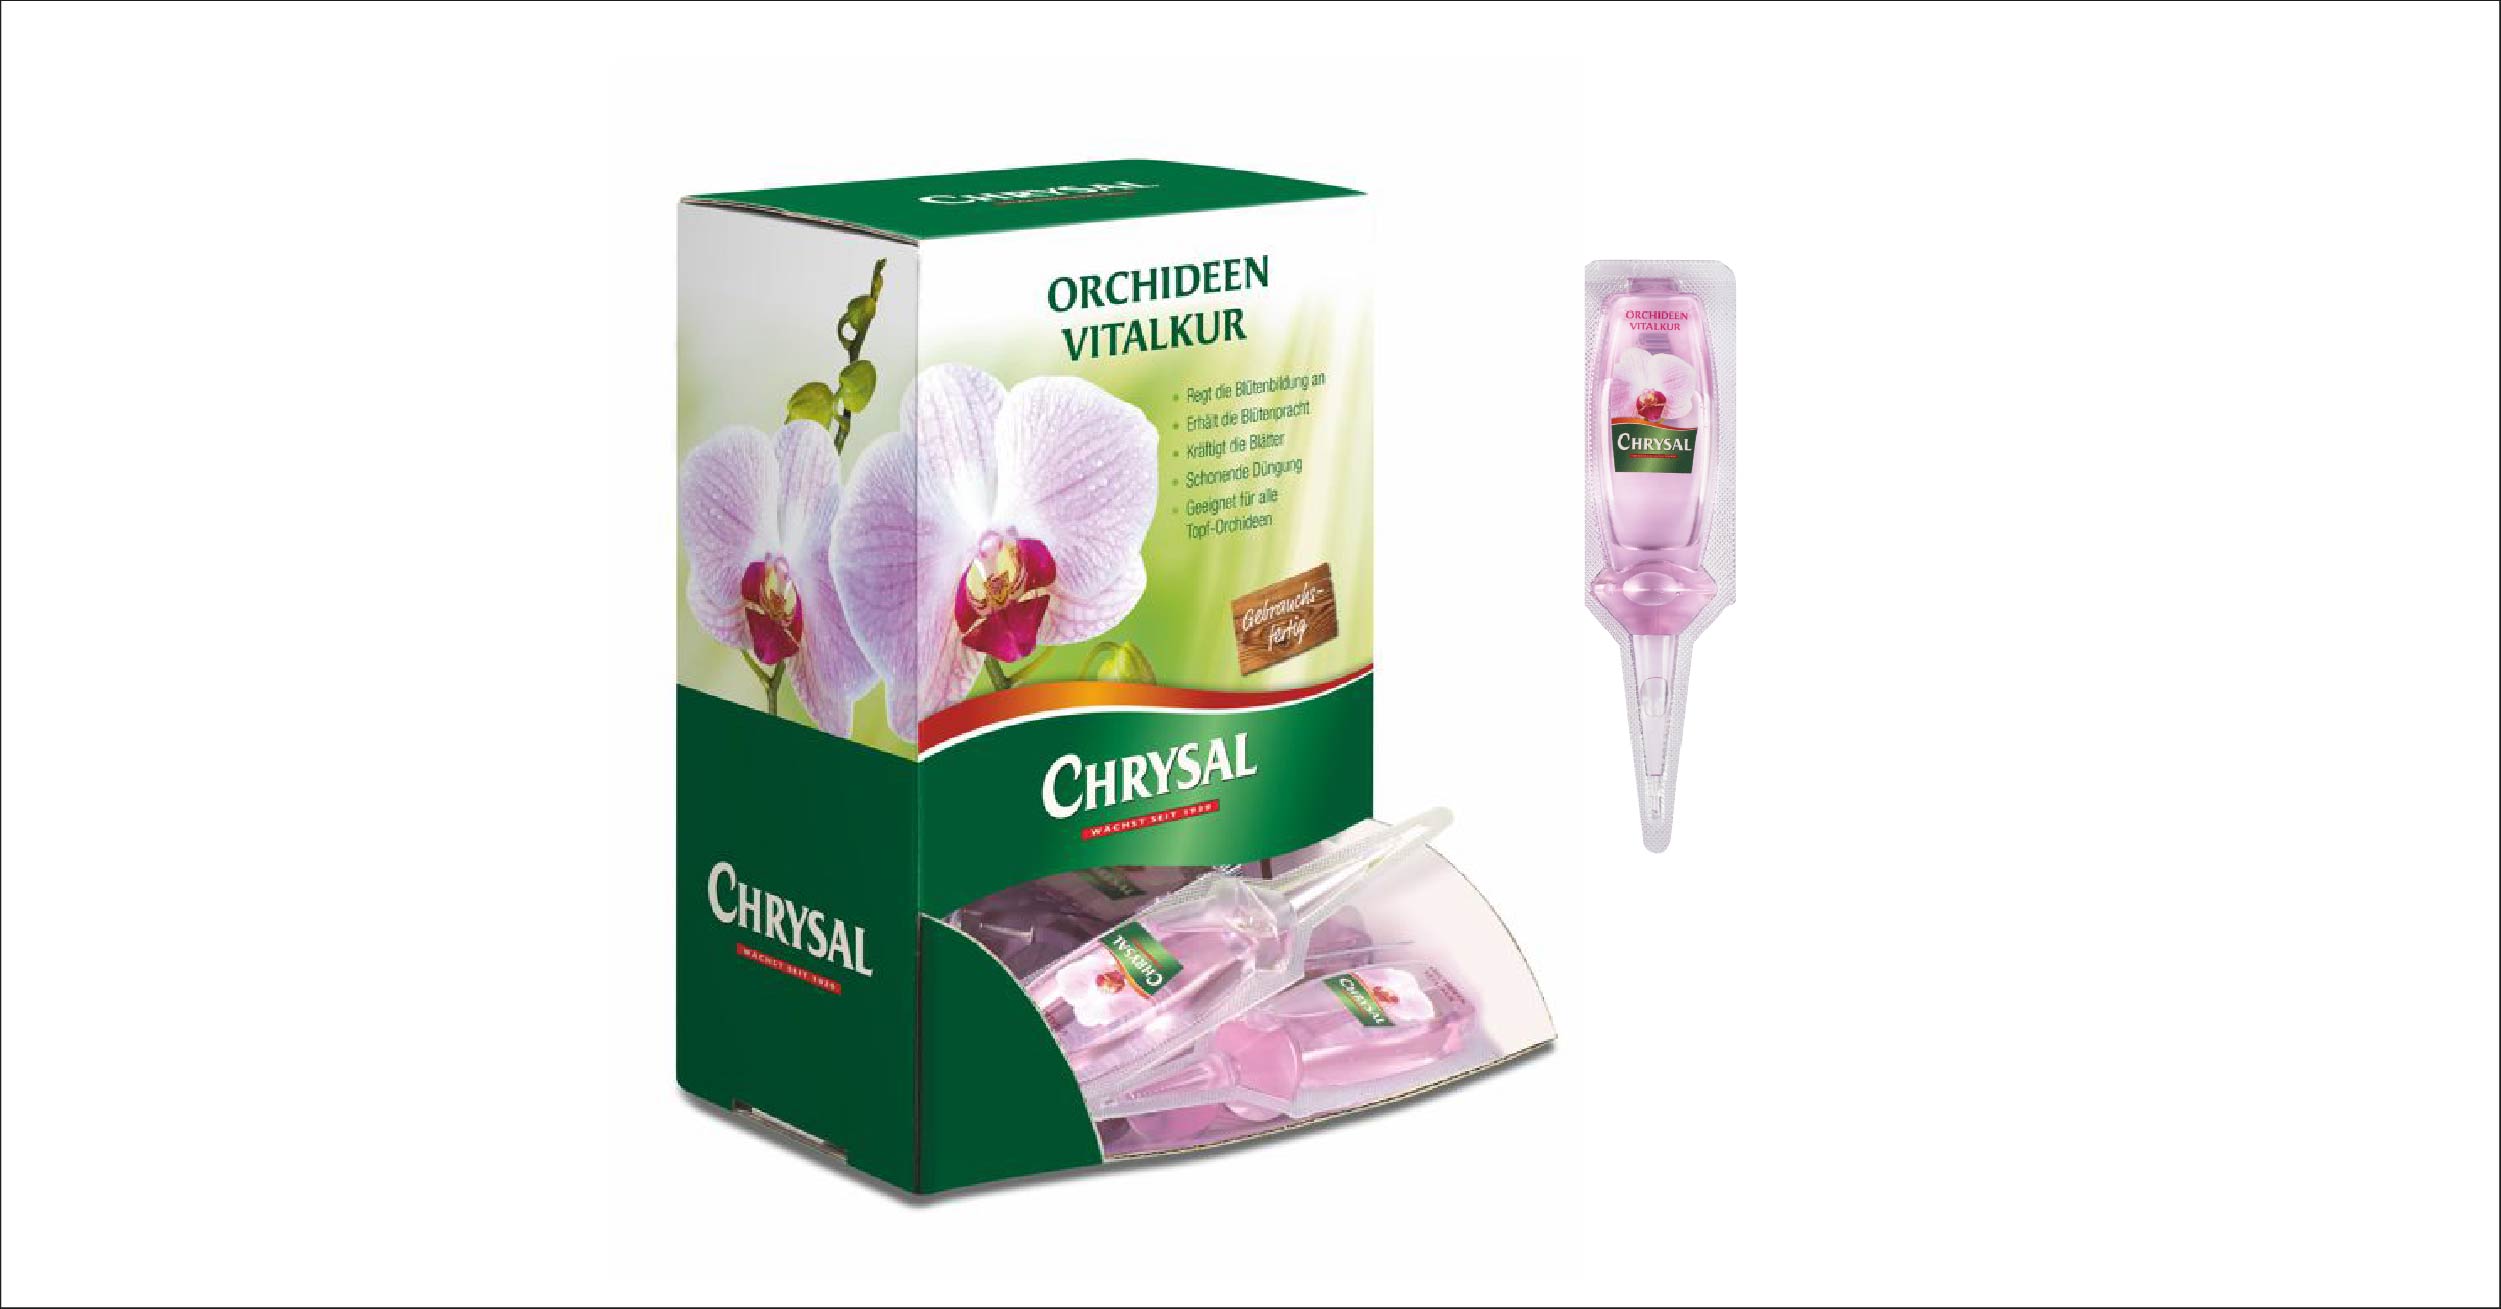 Chrysal Orchideen Vitalkur